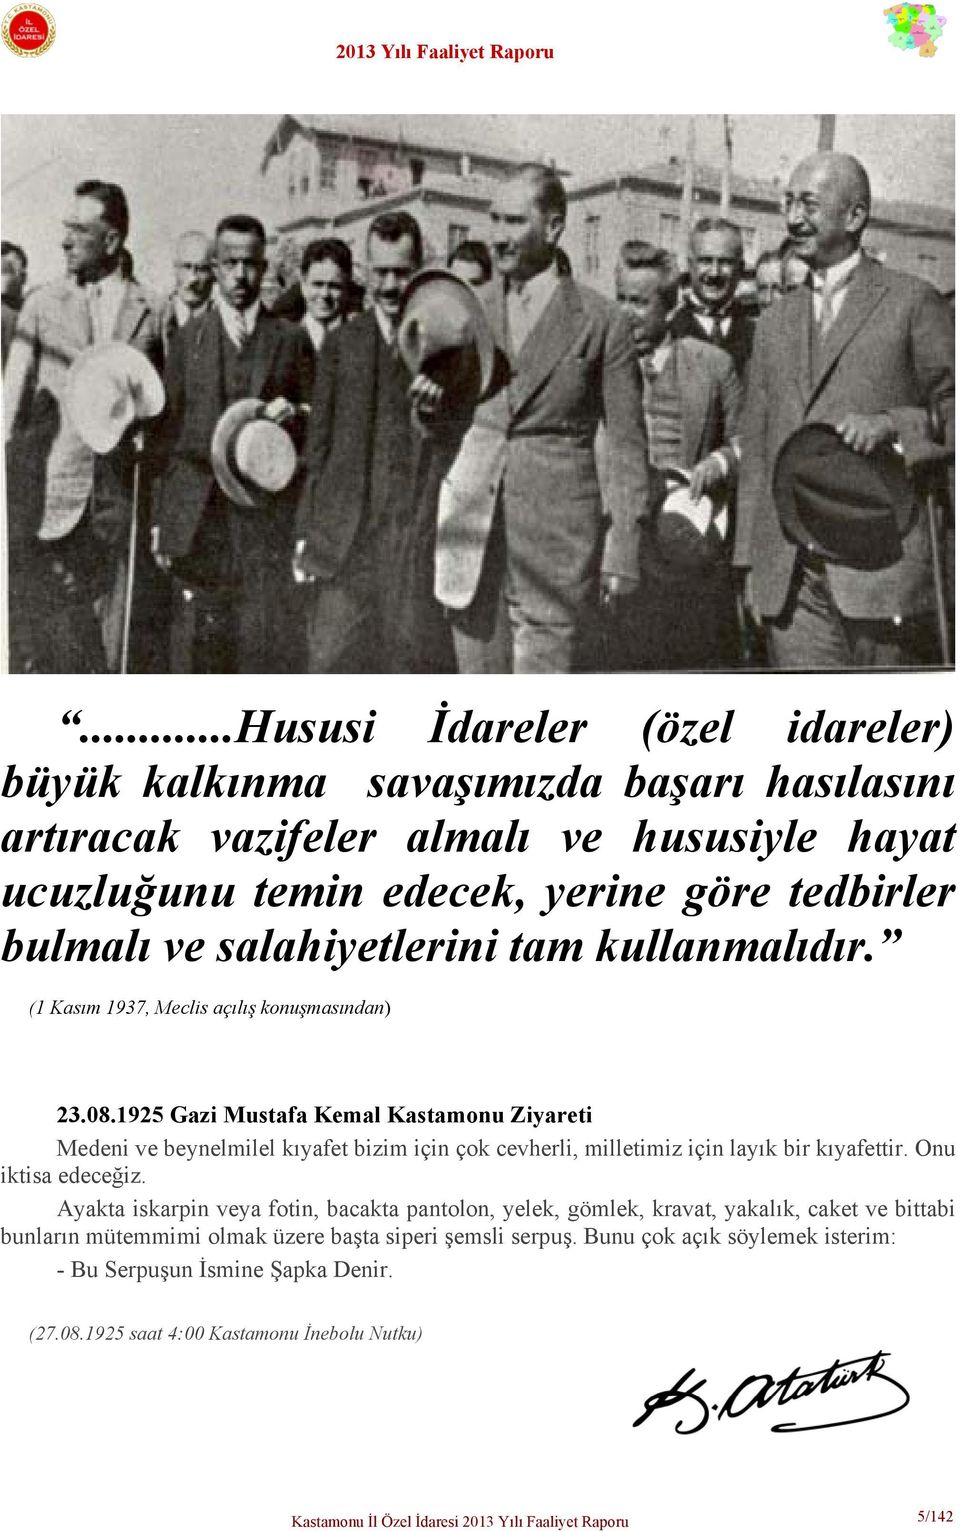 1925 Gazi Mustafa Kemal Kastamonu Ziyareti Medeni ve beynelmilel kıyafet bizim için çok cevherli, milletimiz için layık bir kıyafettir. Onu iktisa edeceğiz.